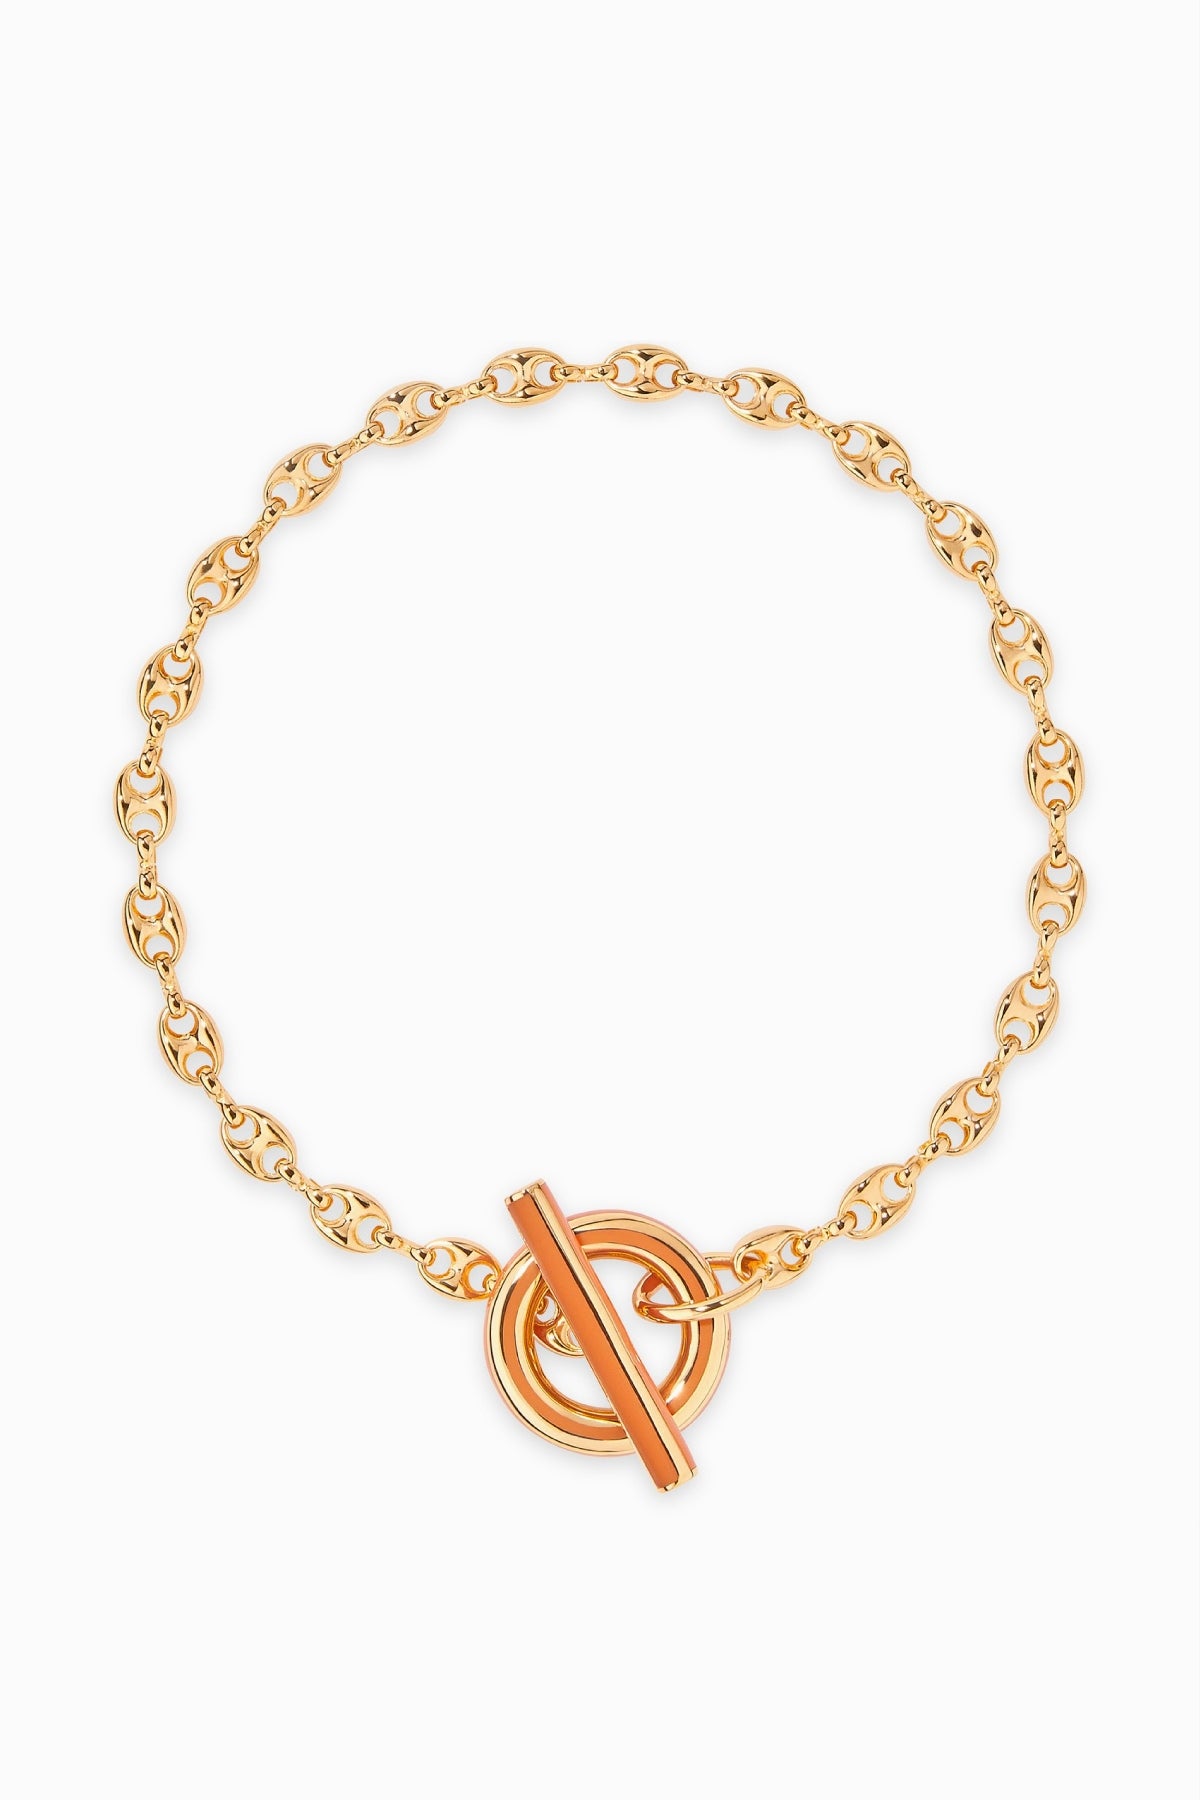 Aurelie Bidermann Tarsila Chain Necklace - Gold/ Tan